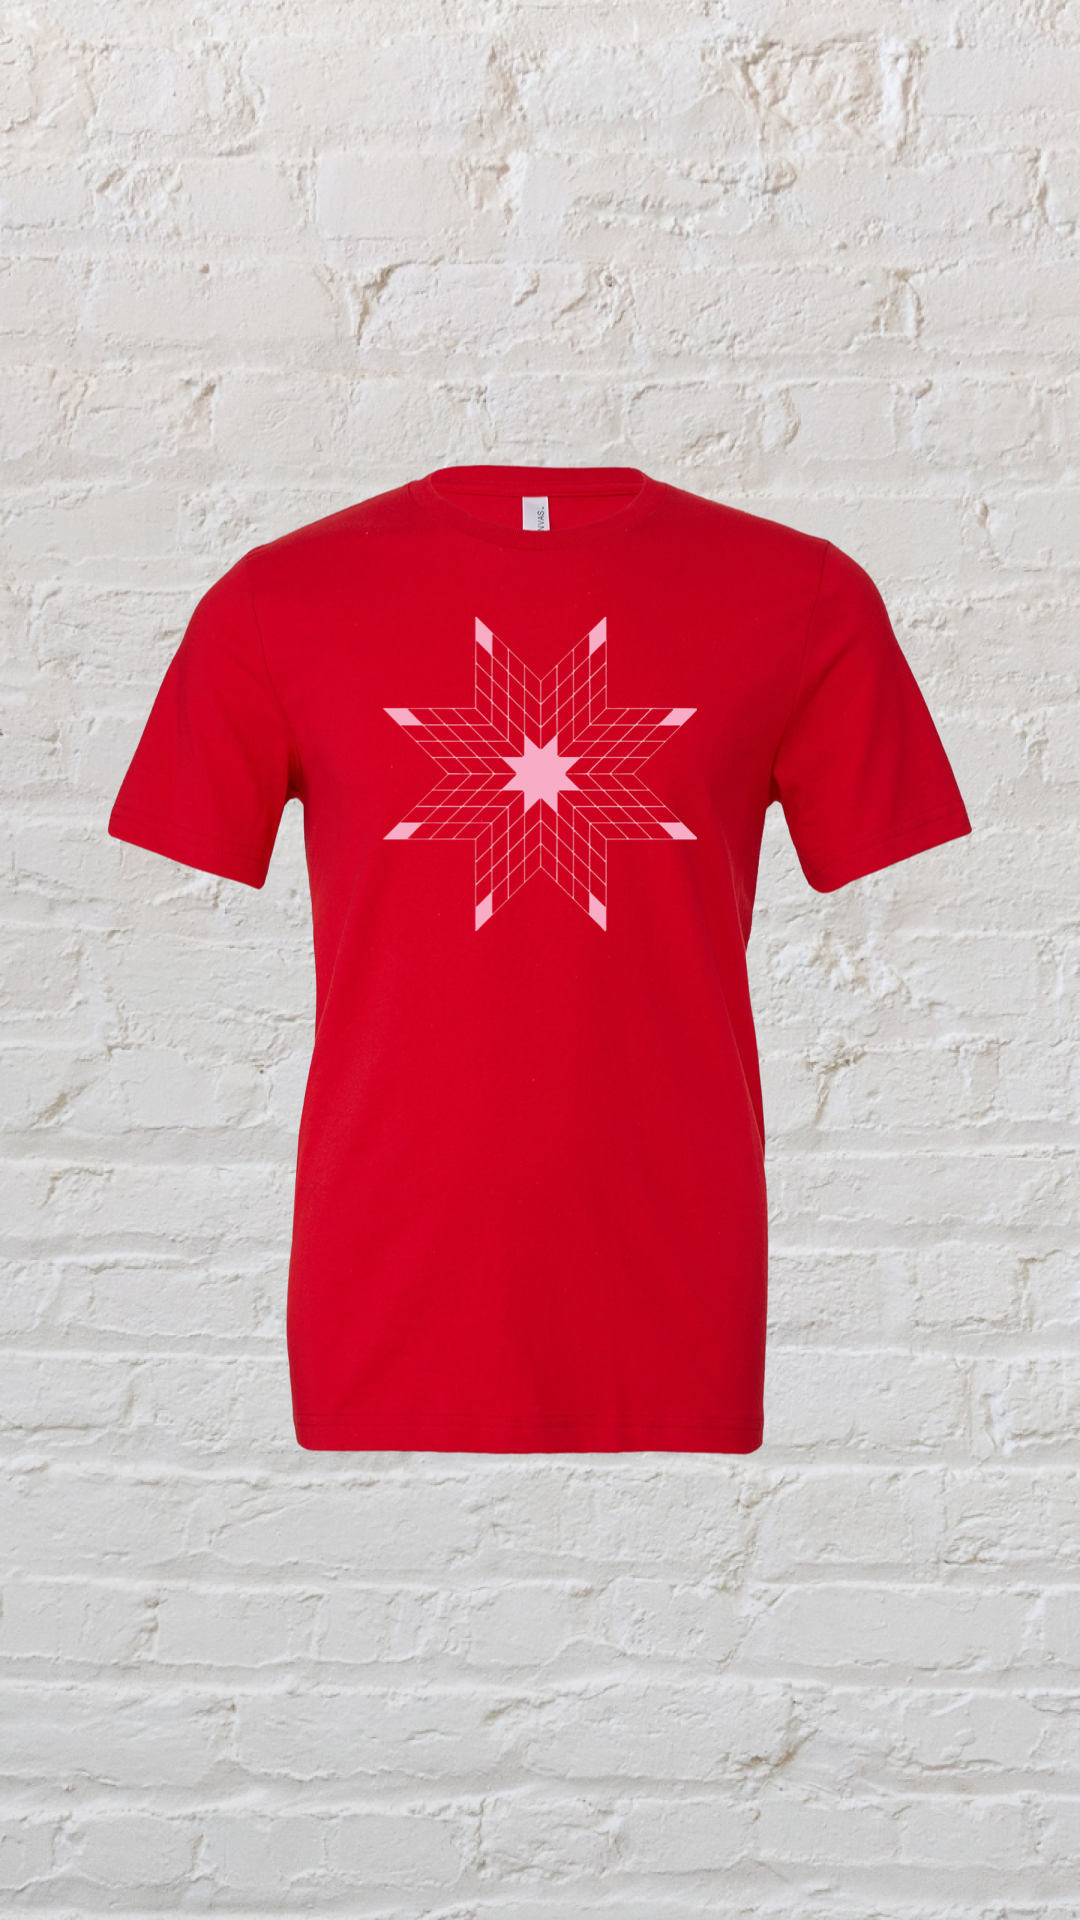 Be My Snag "Og" Star T-shirt